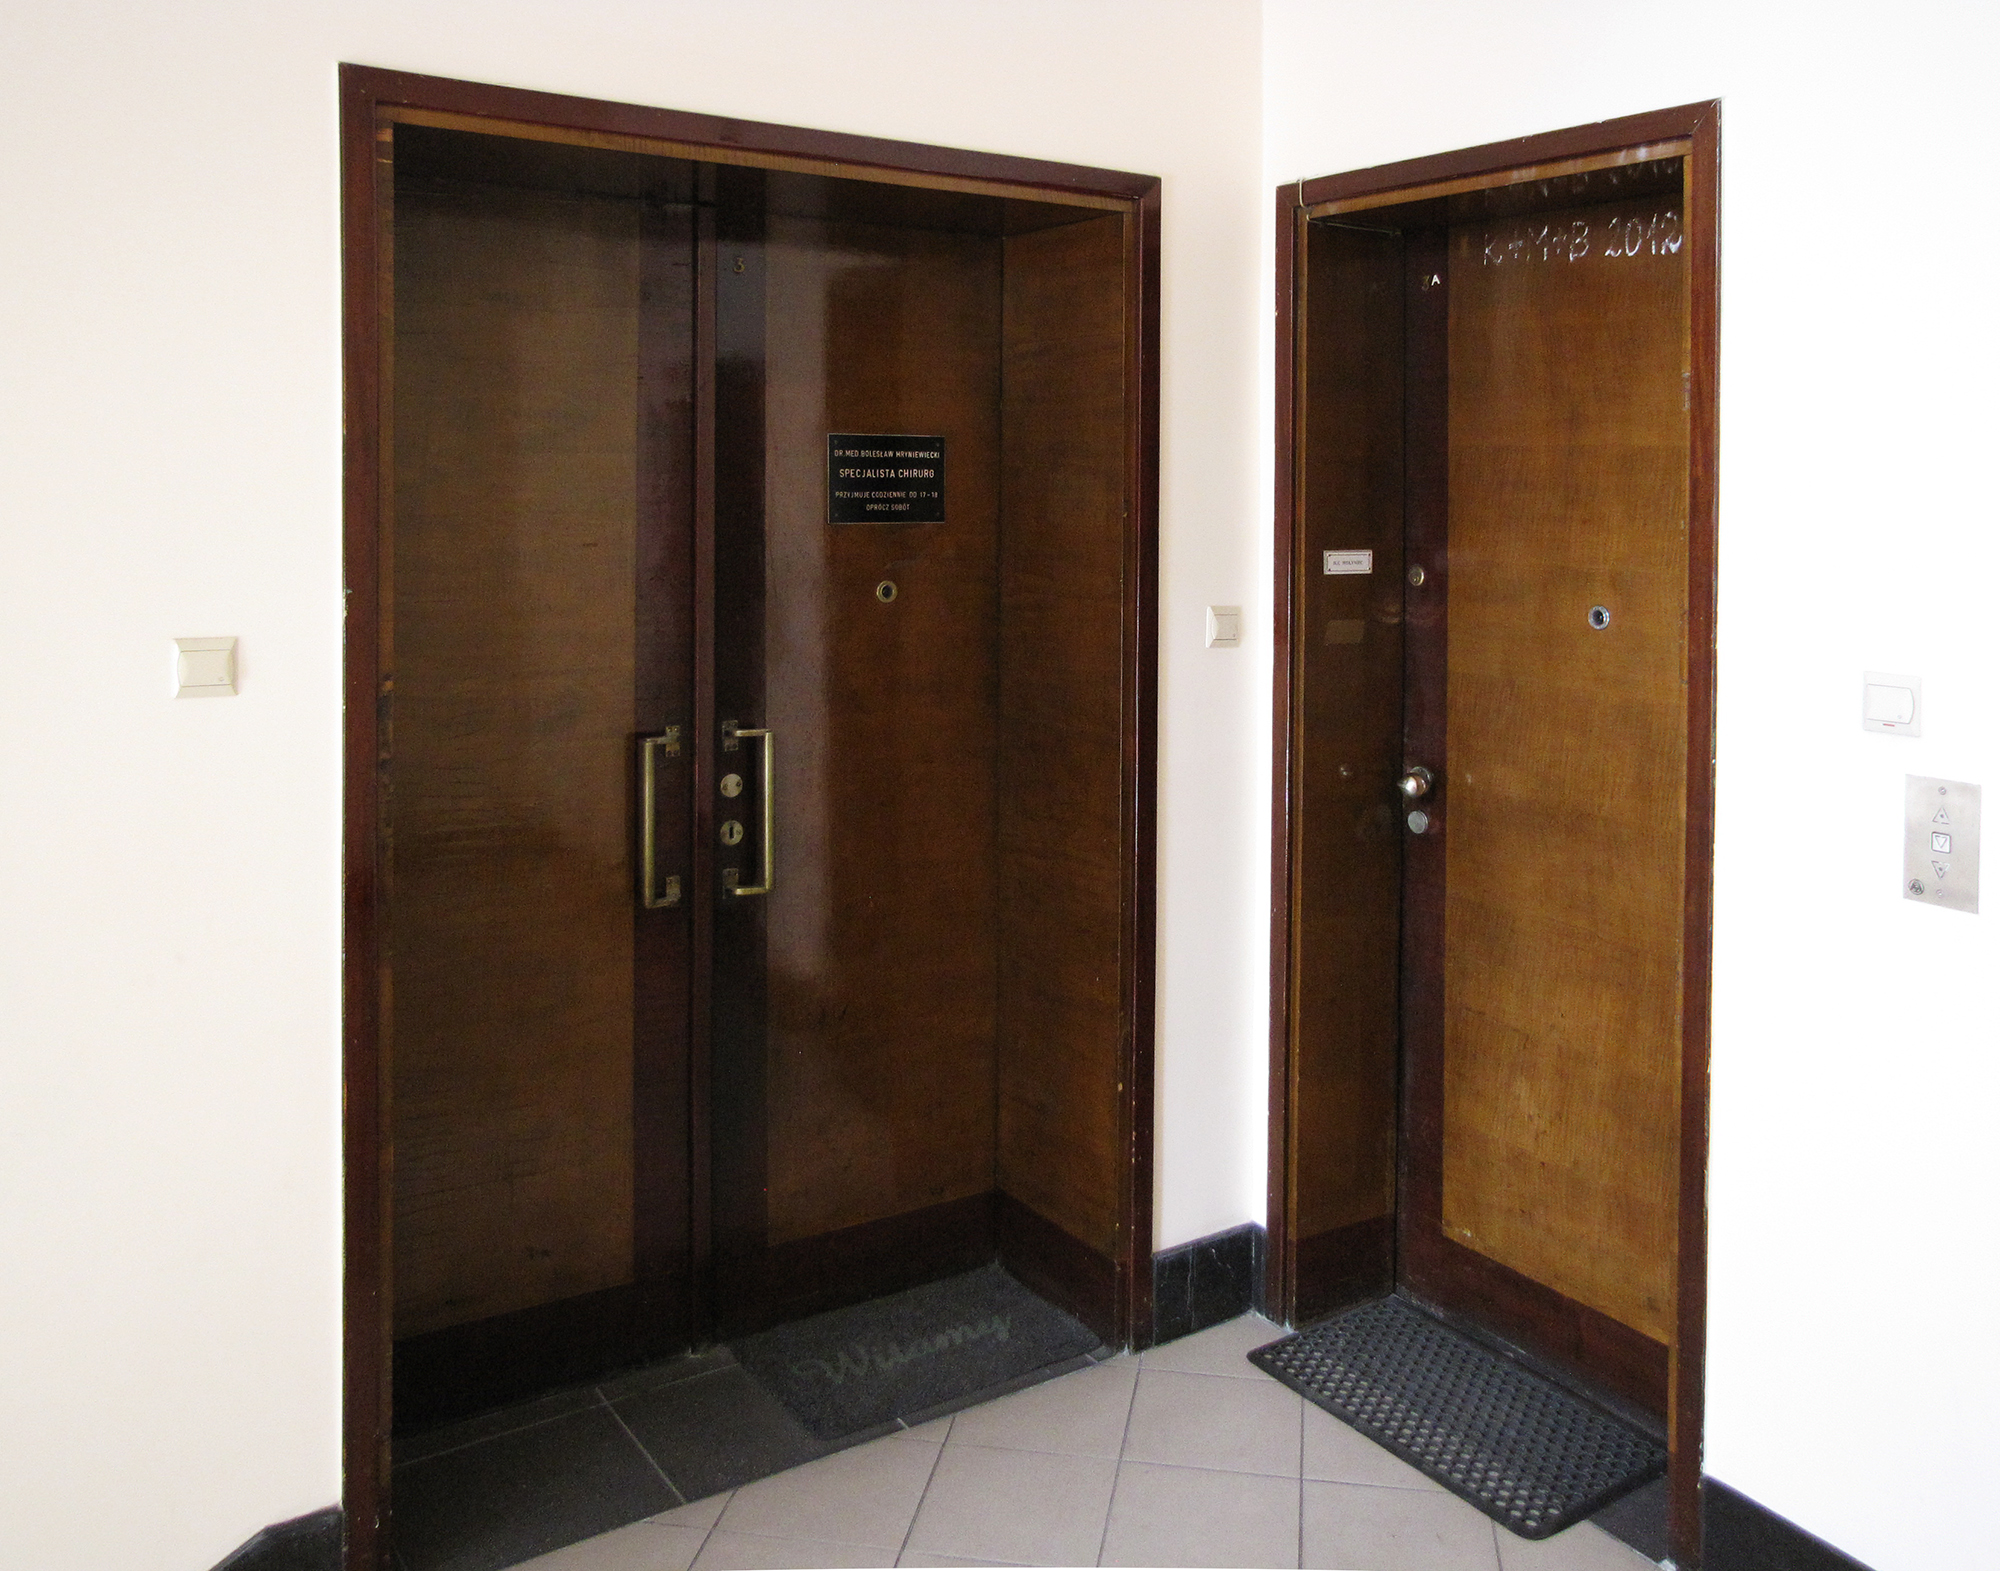 Drzwi do mieszkań w głównej klatce schodowej budynku przy ul. 3 Maja 27-31, lata 30. XX w.